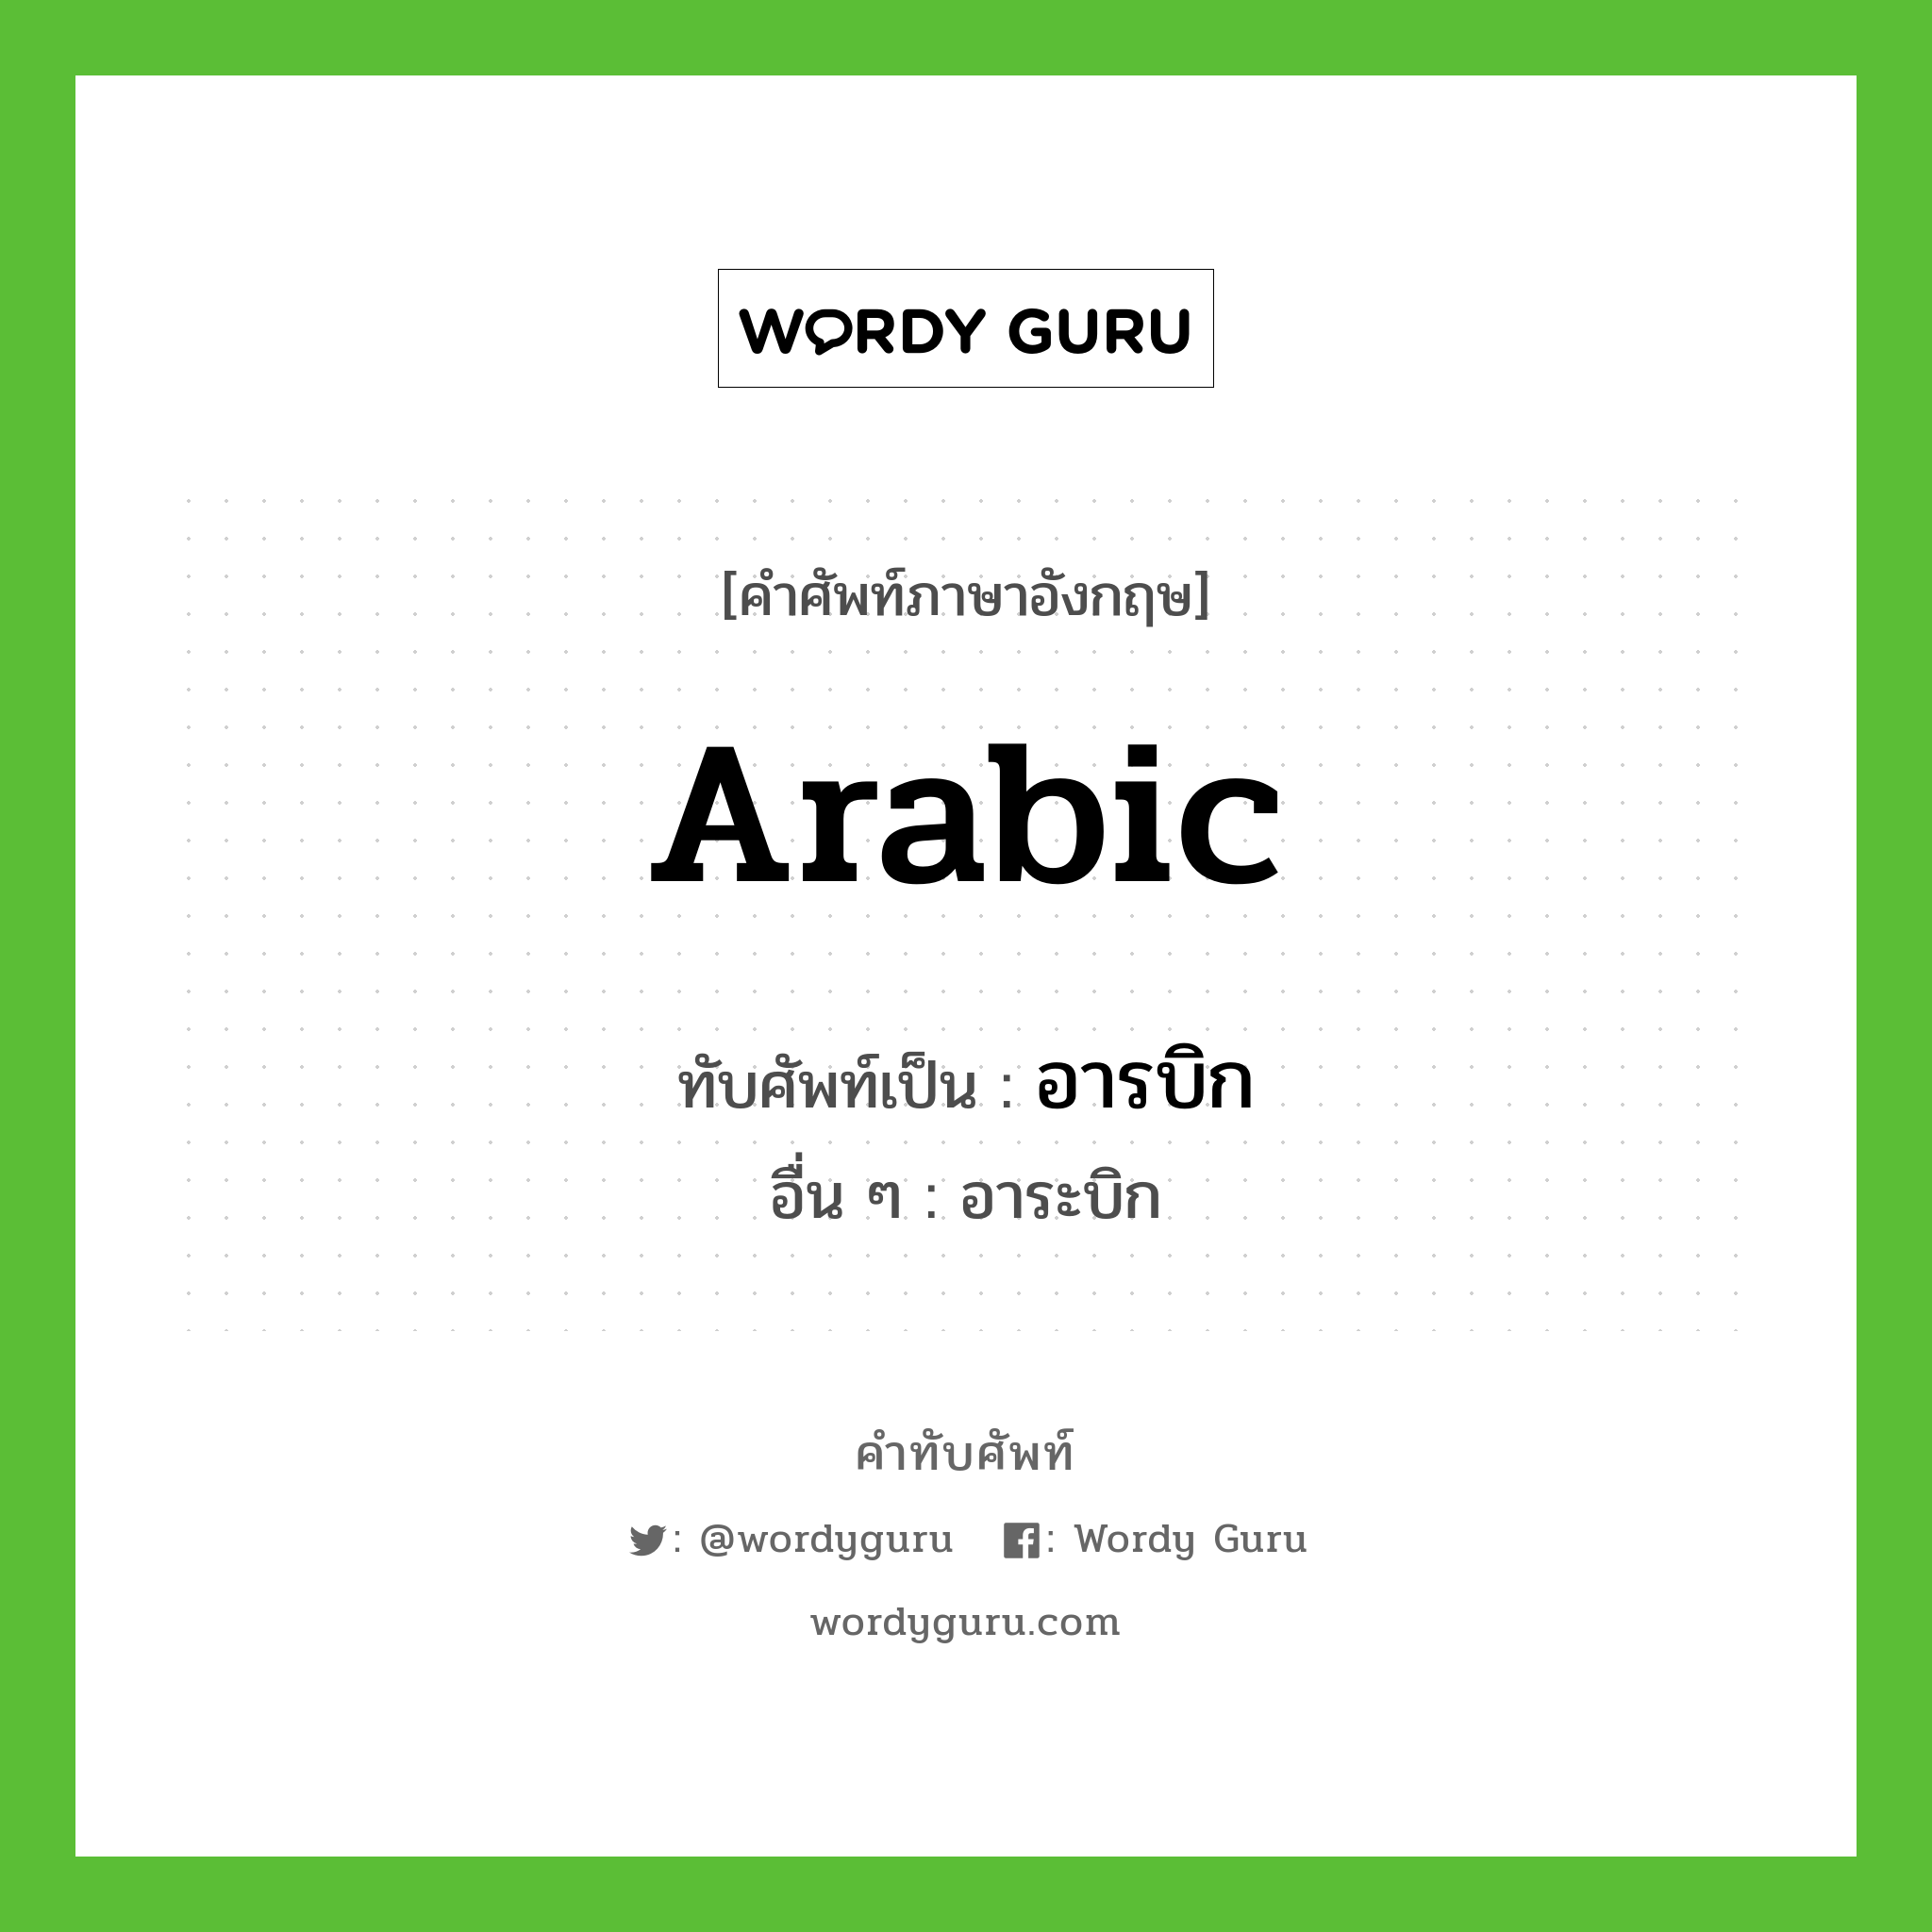 อารบิก เขียนอย่างไร?, คำศัพท์ภาษาอังกฤษ อารบิก ทับศัพท์เป็น arabic อื่น ๆ อาระบิก